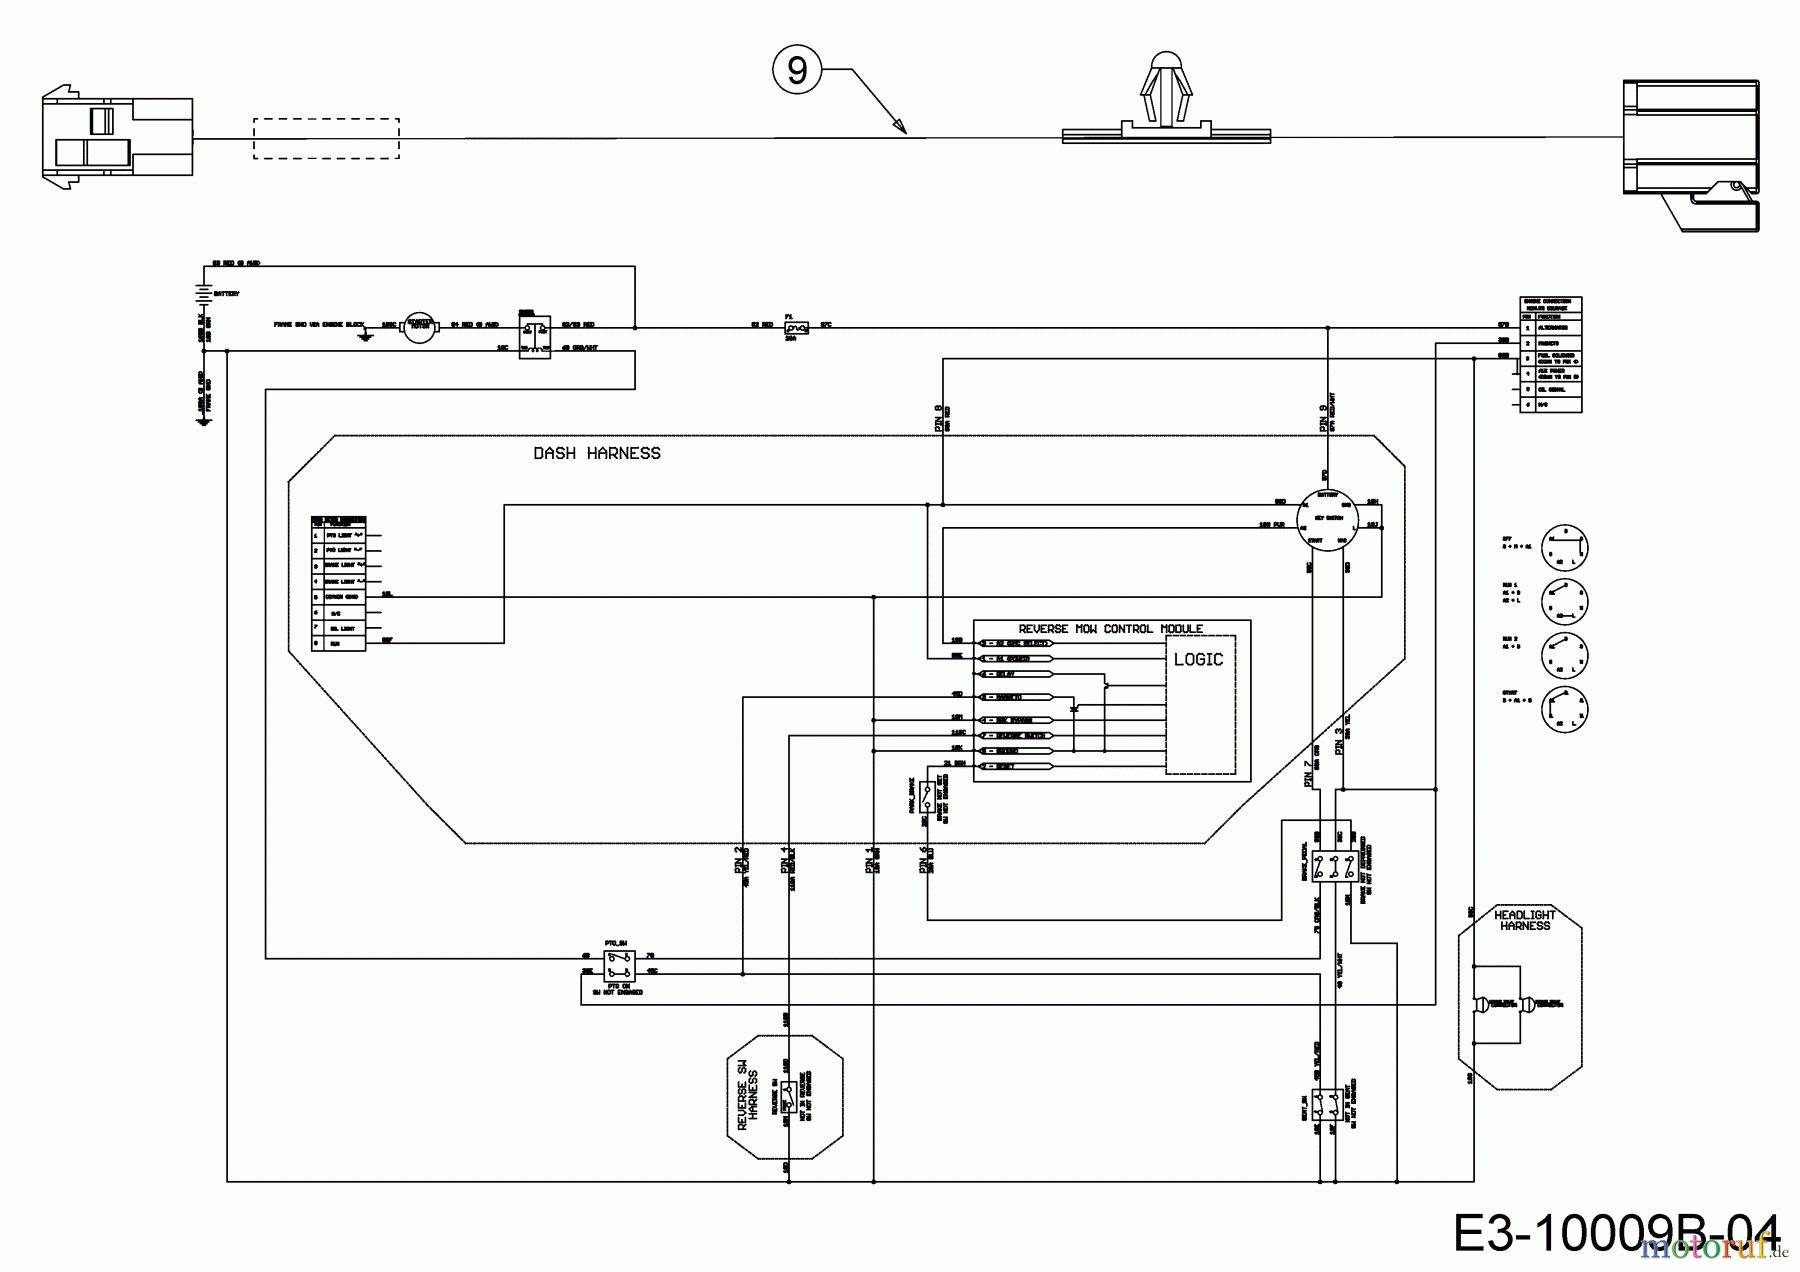  Cub Cadet Lawn tractors XT1 OS96 13B8A1CF603  (2019) Wiring diagram reverse